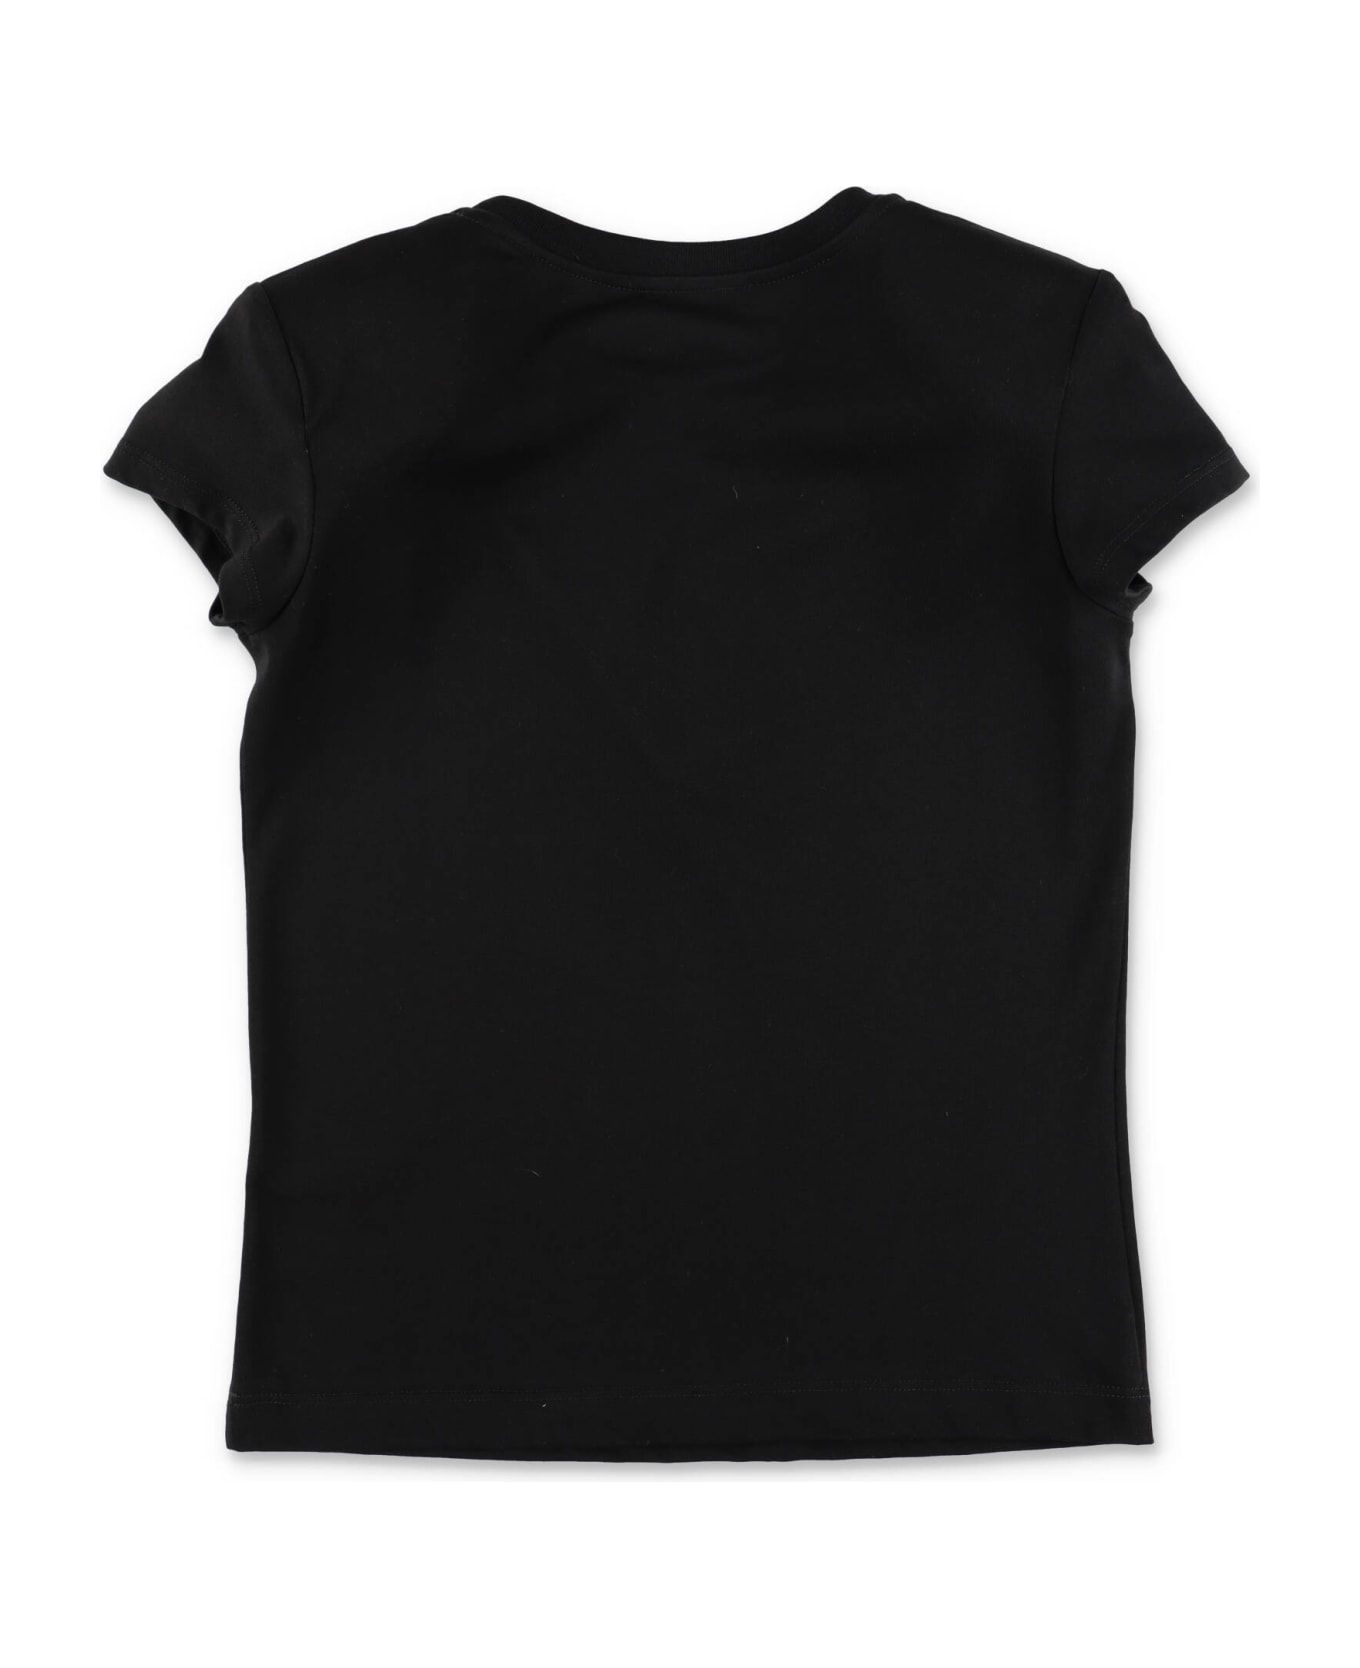 Balmain T-shirt Nera In Jersey Di Cotone Bambina - Nero Tシャツ＆ポロシャツ